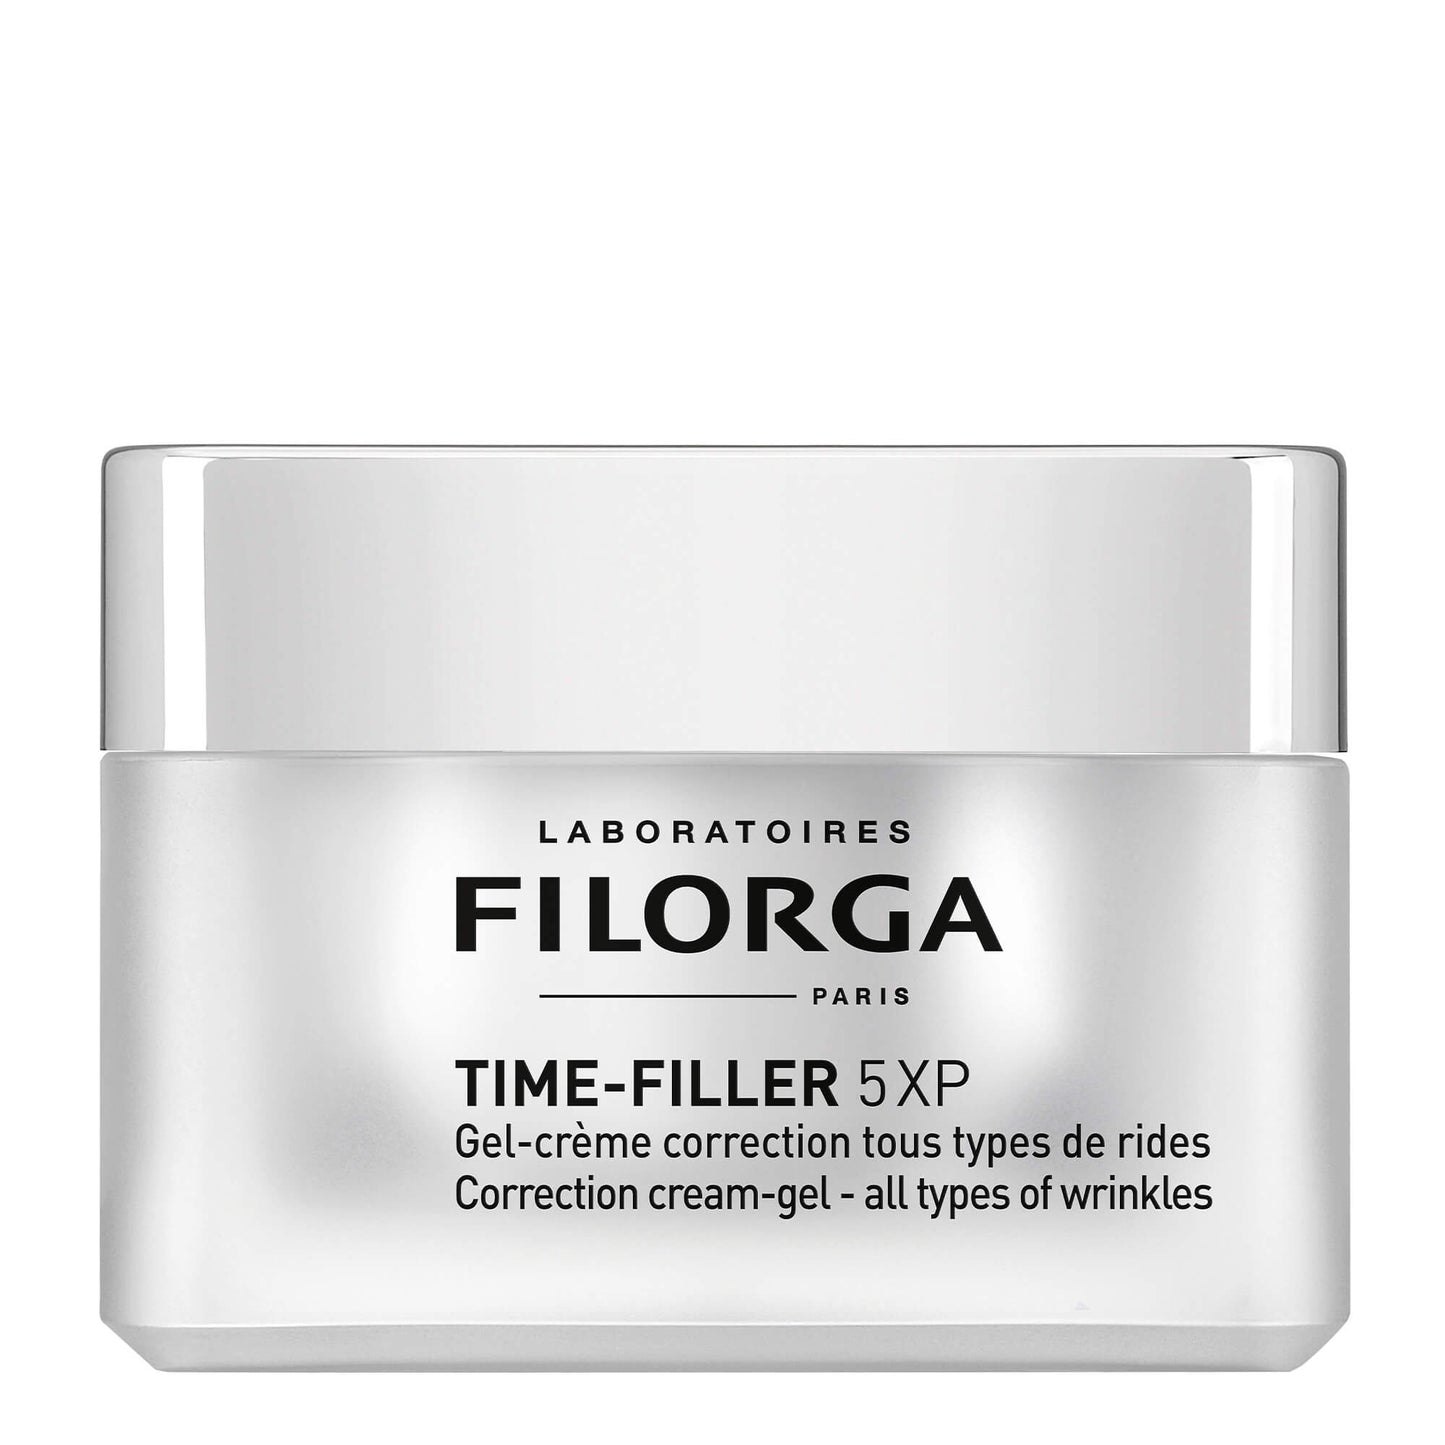 FILORGA TIME-FILLER 5XP GEL-CREAM - Anti-wrinkle mattifying gel-cream 50ml